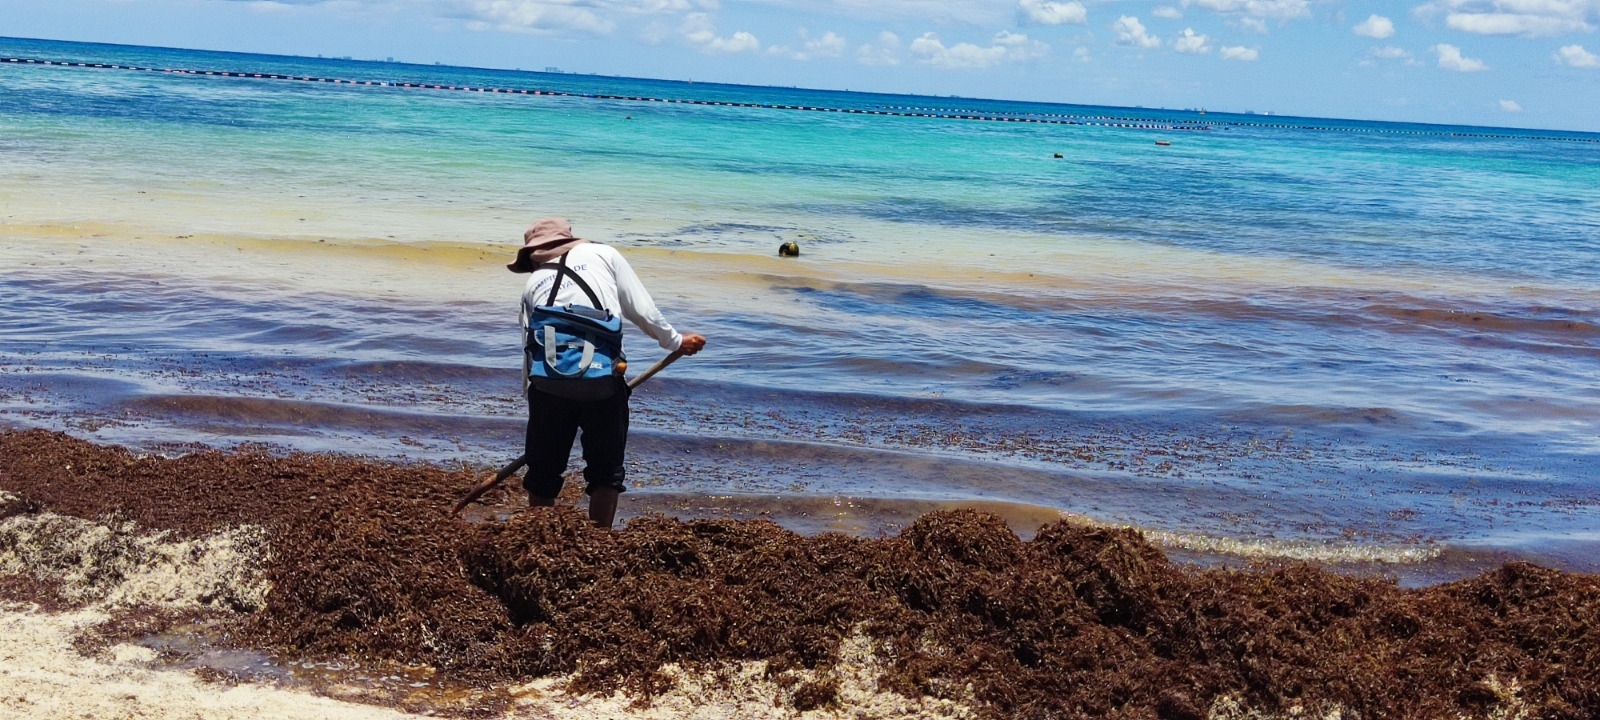 Recolectores de sargazo en Playa del Carmen exponen malas condiciones laborales